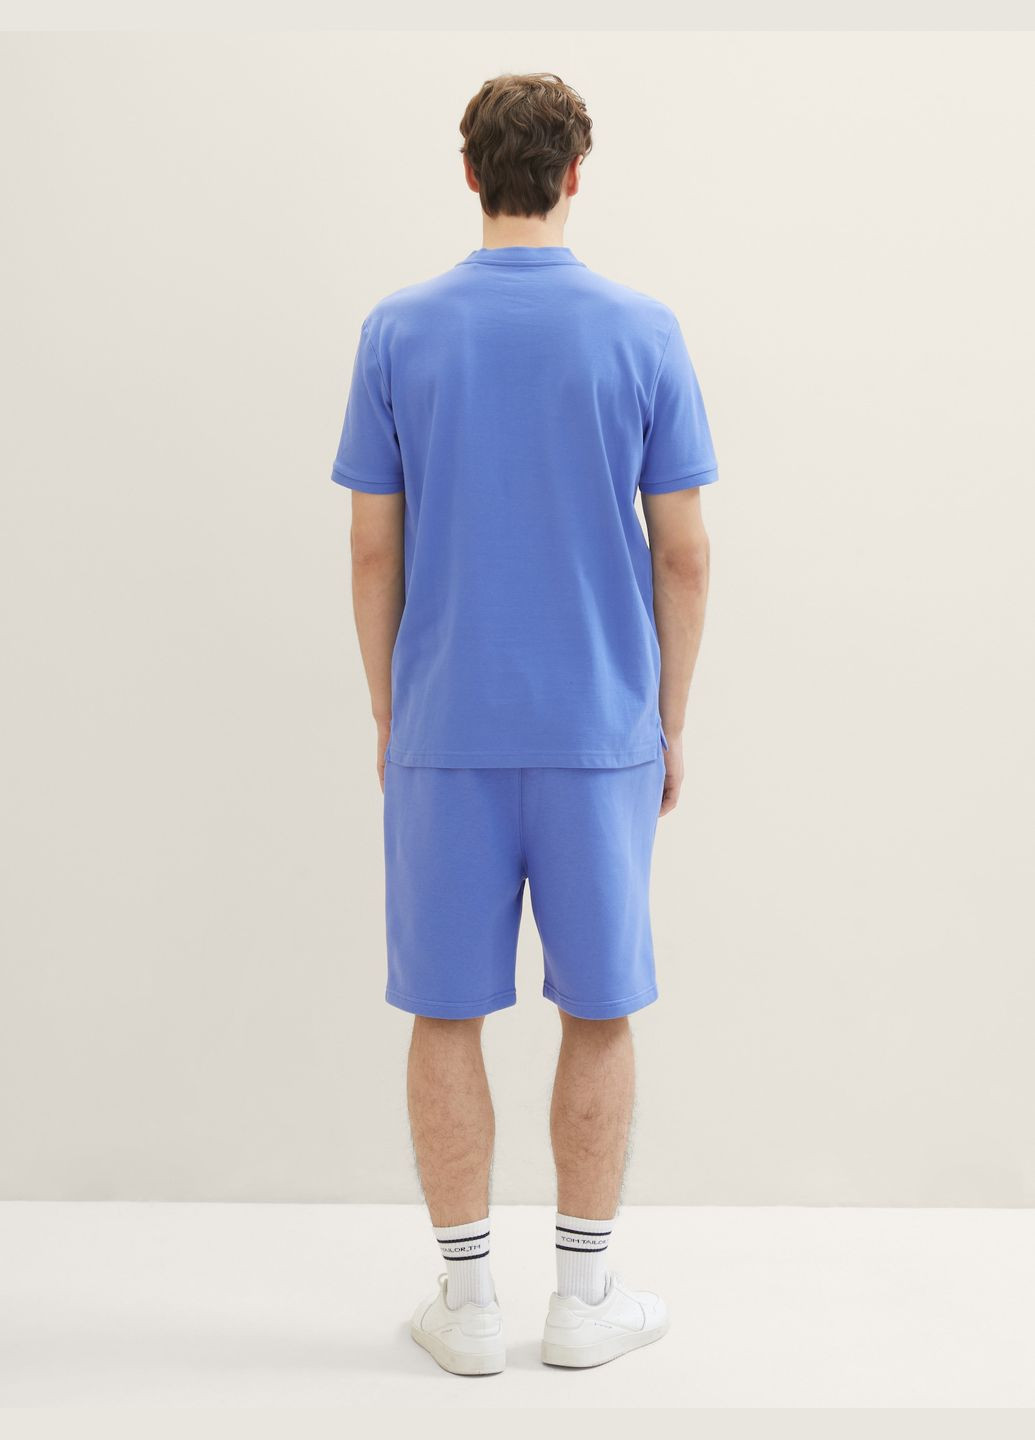 Голубой футболка-поло для мужчин Tom Tailor однотонная